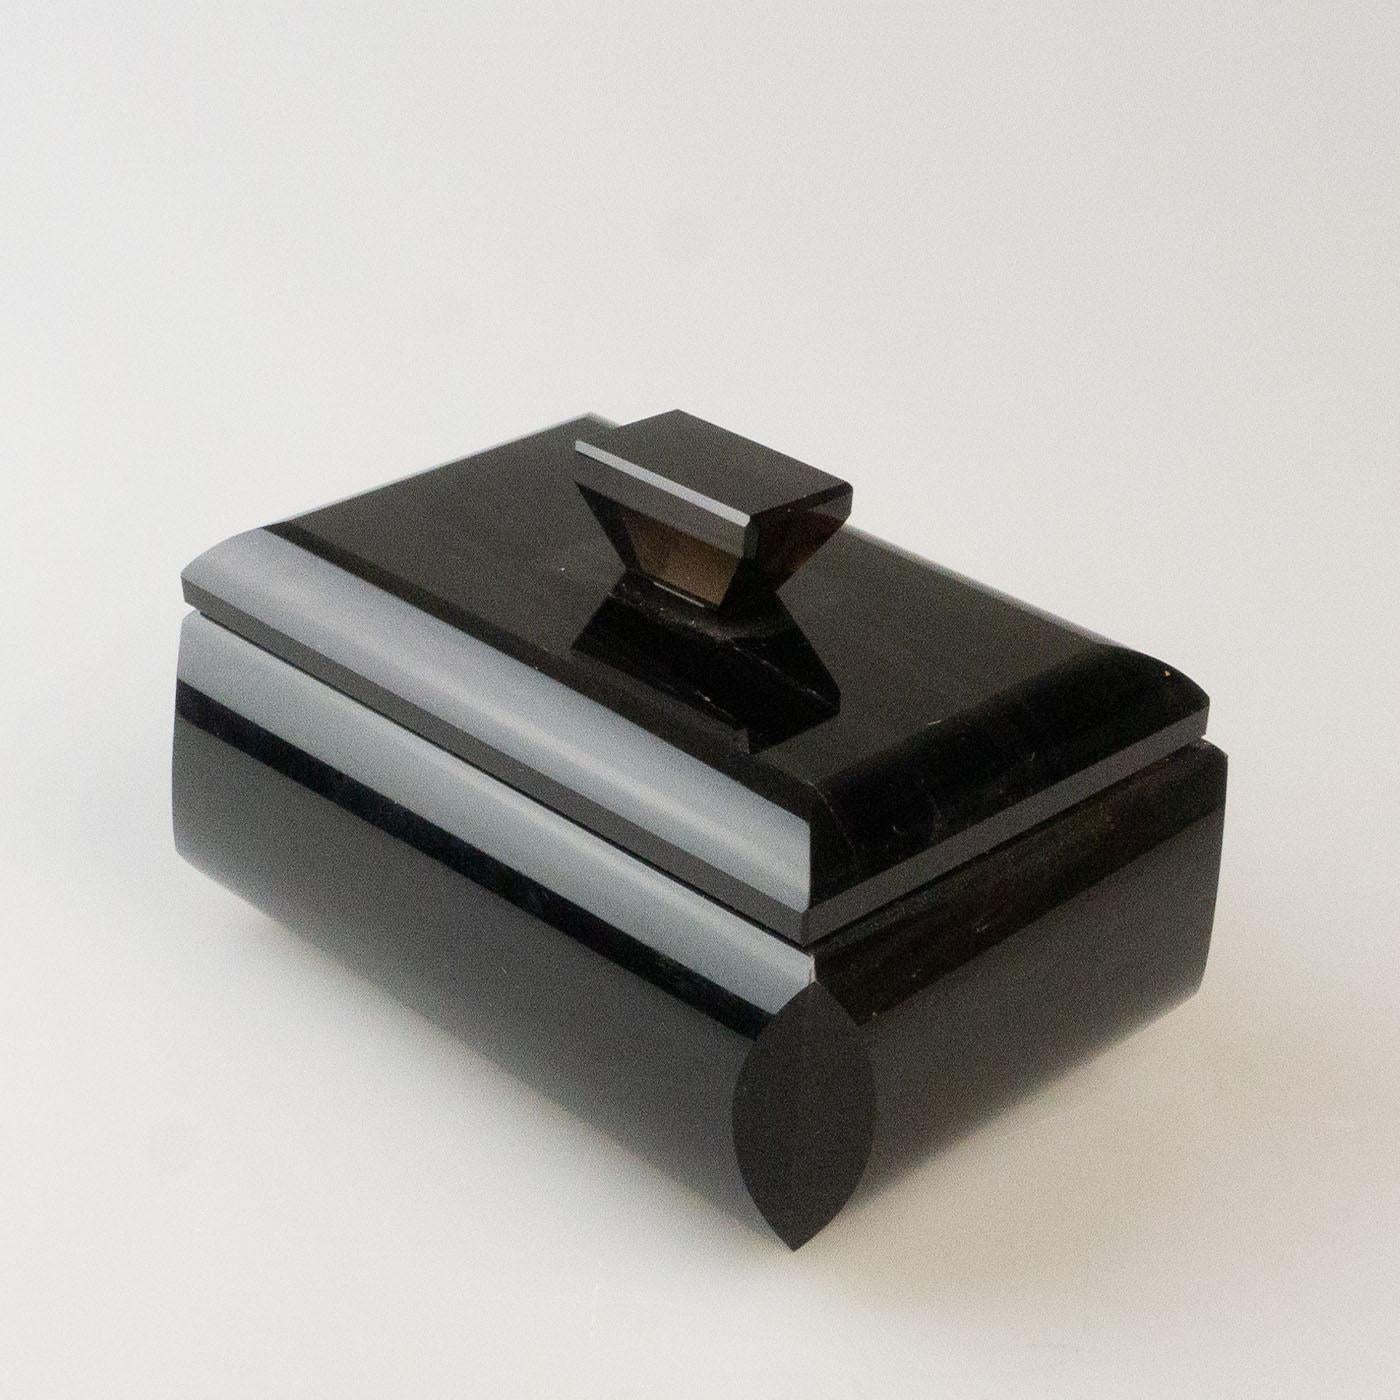 Boîte rectangulaire en obsidienne noire massive composée d'une base et d'un couvercle avec un bouton pour faciliter l'ouverture. L'intérieur de cette boîte à bijoux géométrique est doublé de velours taupe doux pour ranger vos bijoux. L'obsidienne